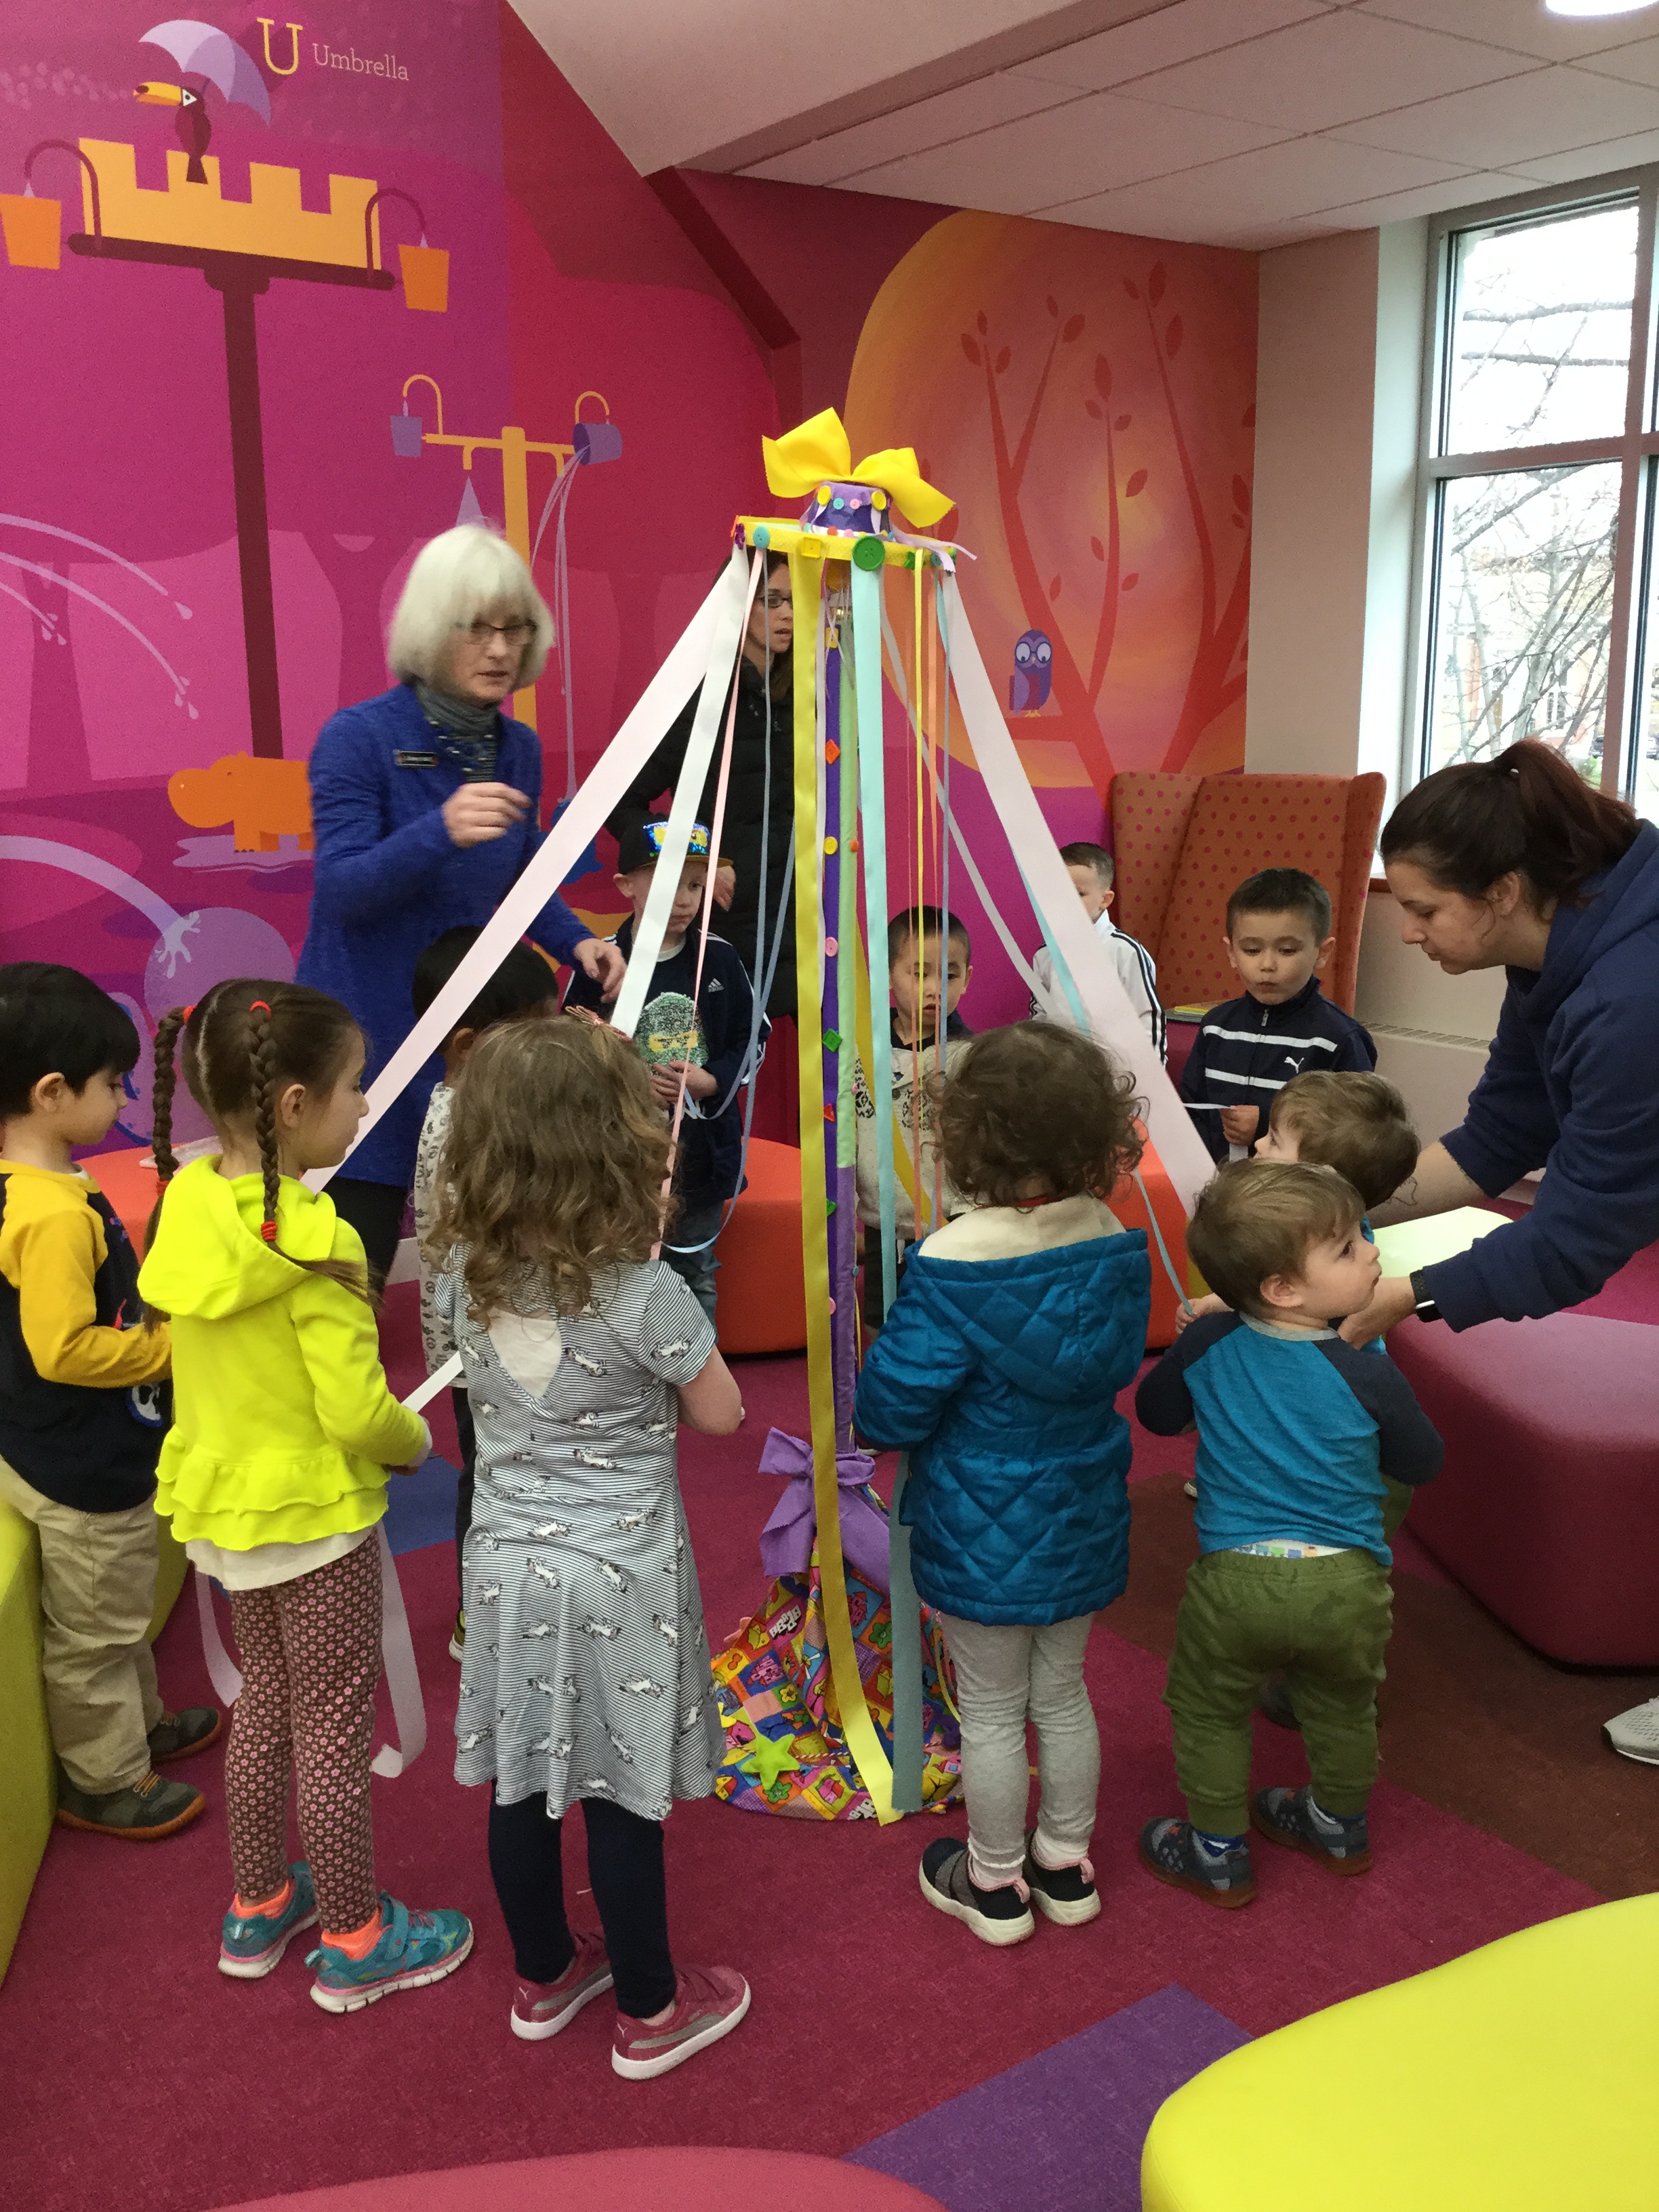 Children around maypole in Children's Room